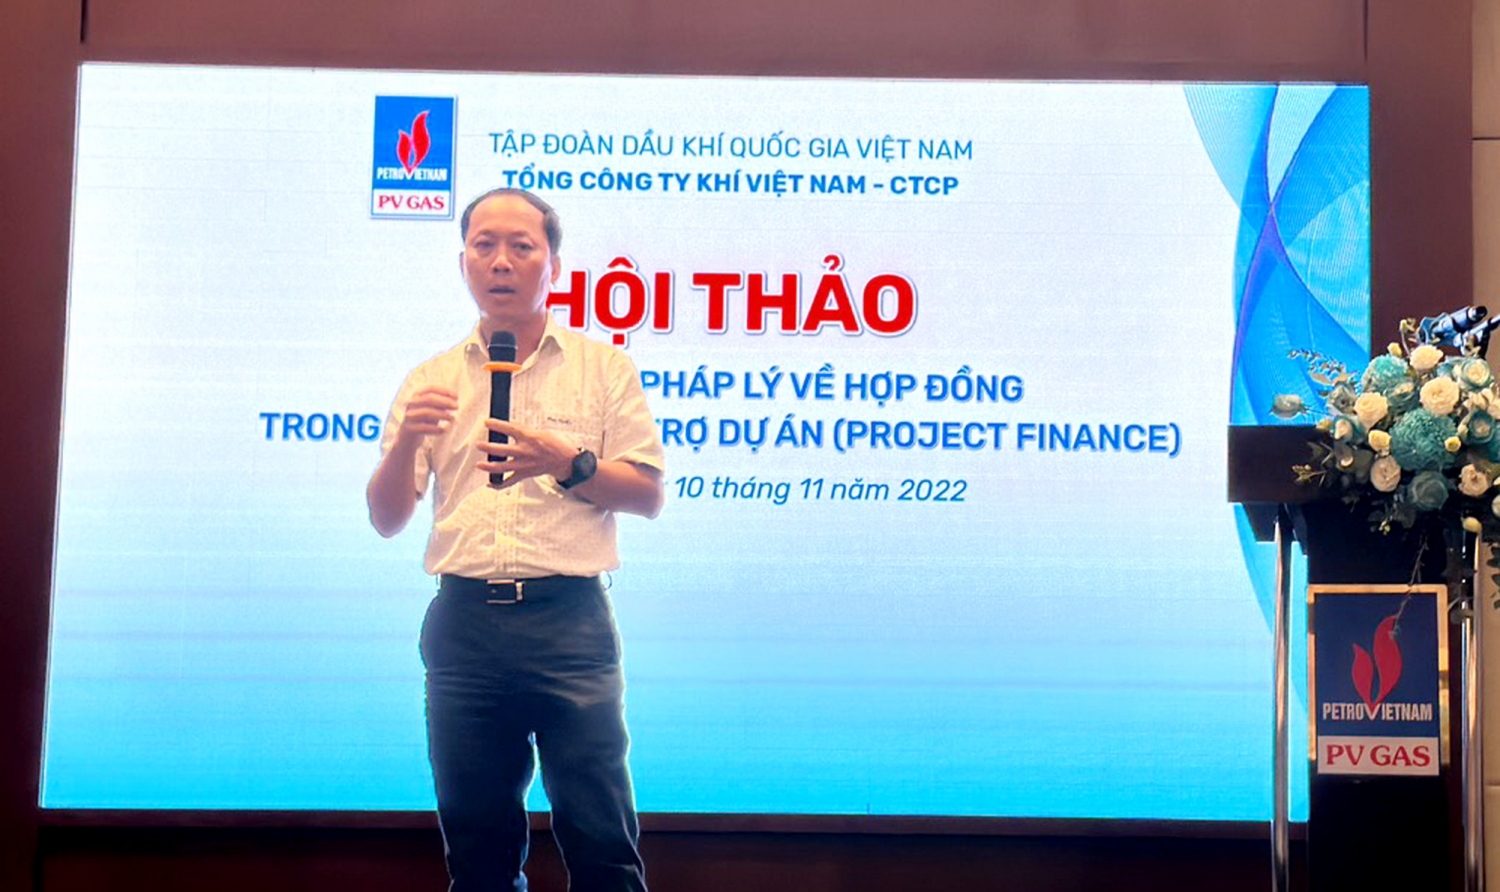 Ông Phạm Đăng Nam – Phó Tổng giám đốc PV GAS phát biểu chỉ đạo Hội thảo.  